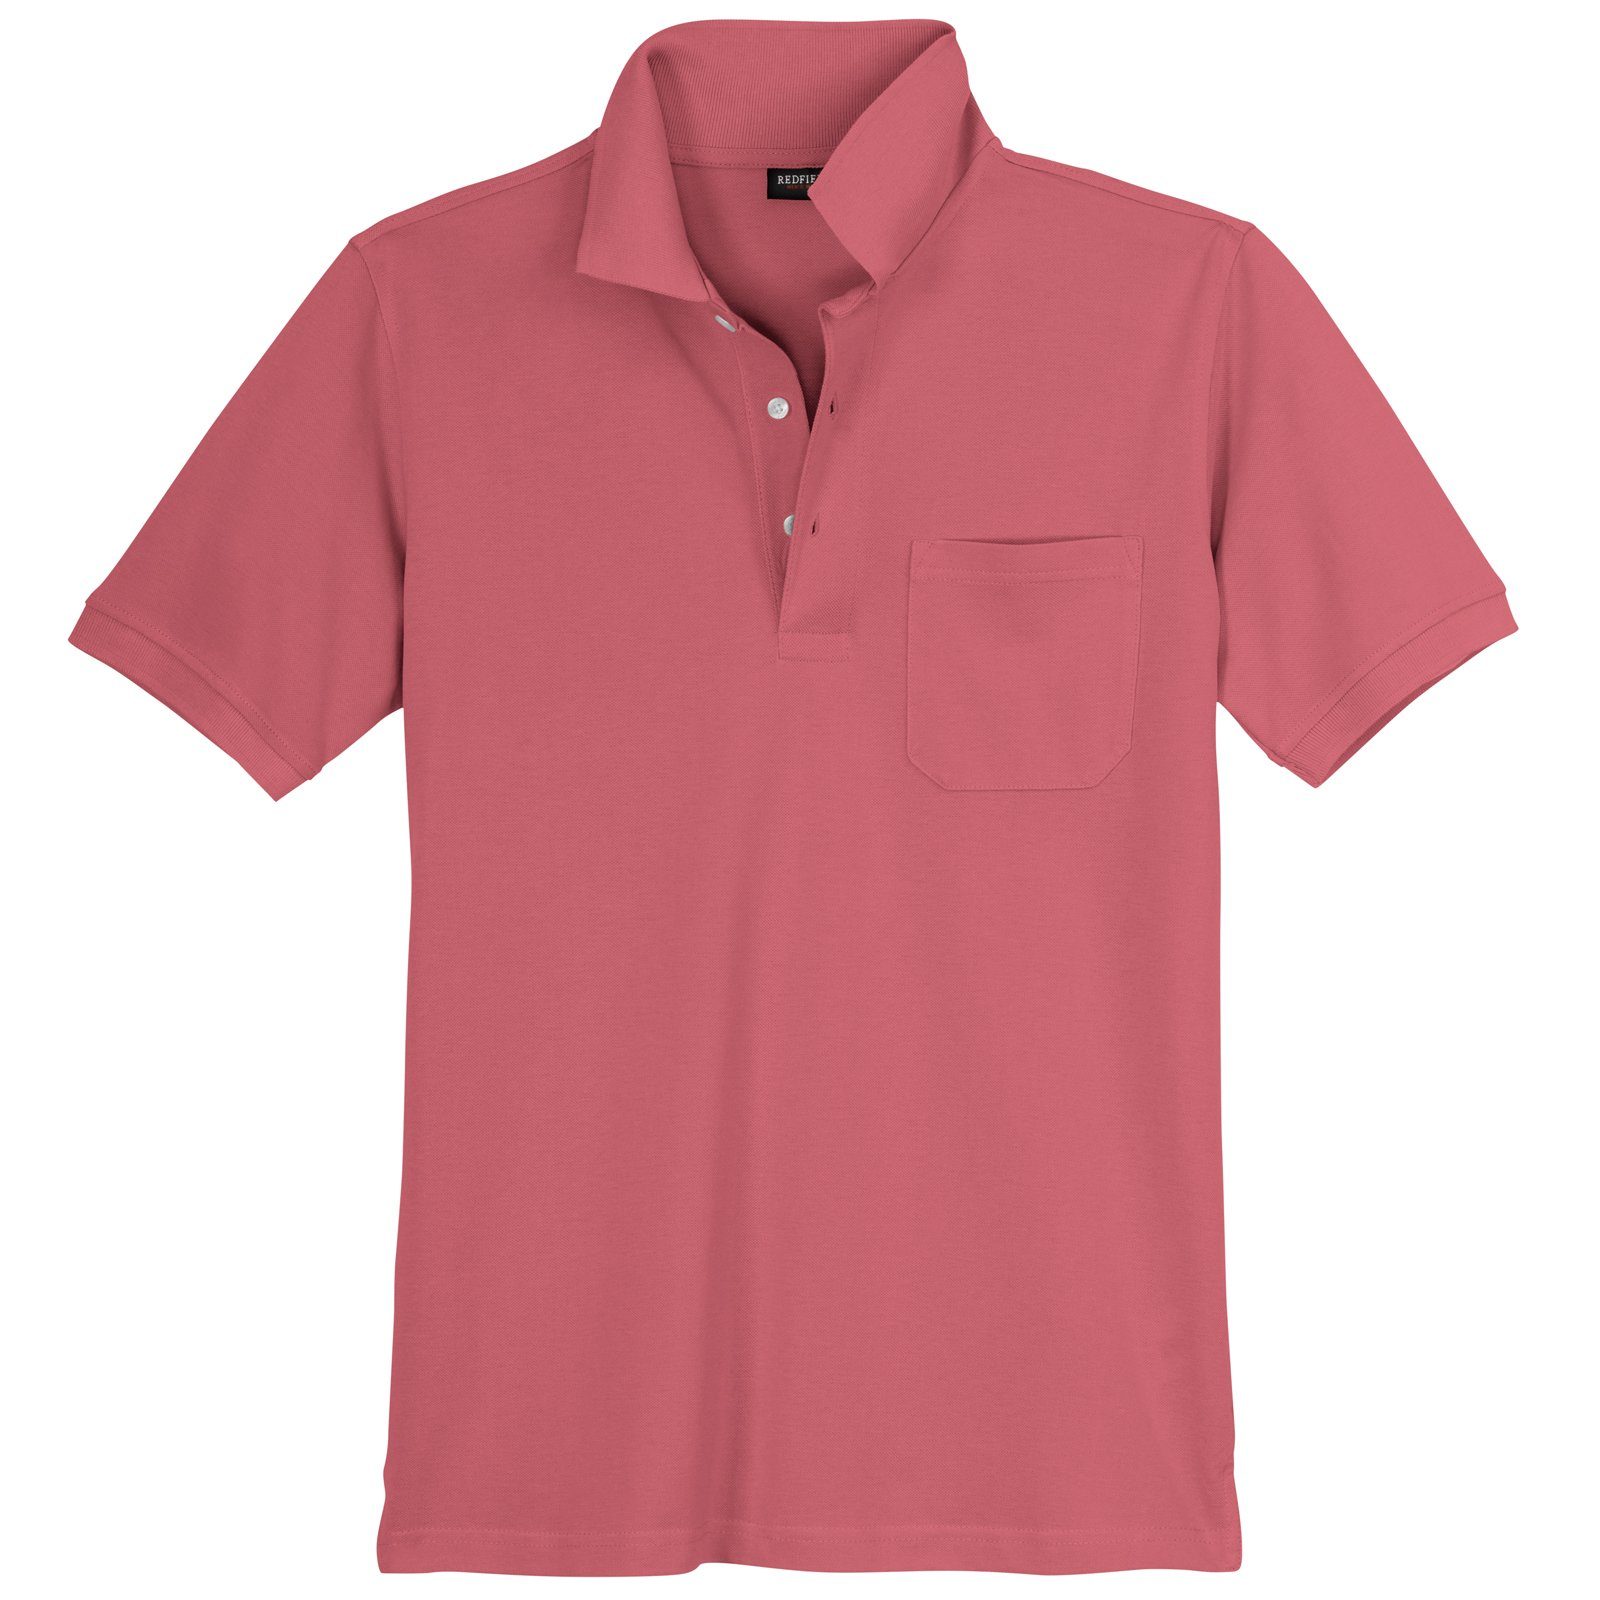 Brusttasche cranberryrot Poloshirt Piqué Große Poloshirt redfield Redfield Größen